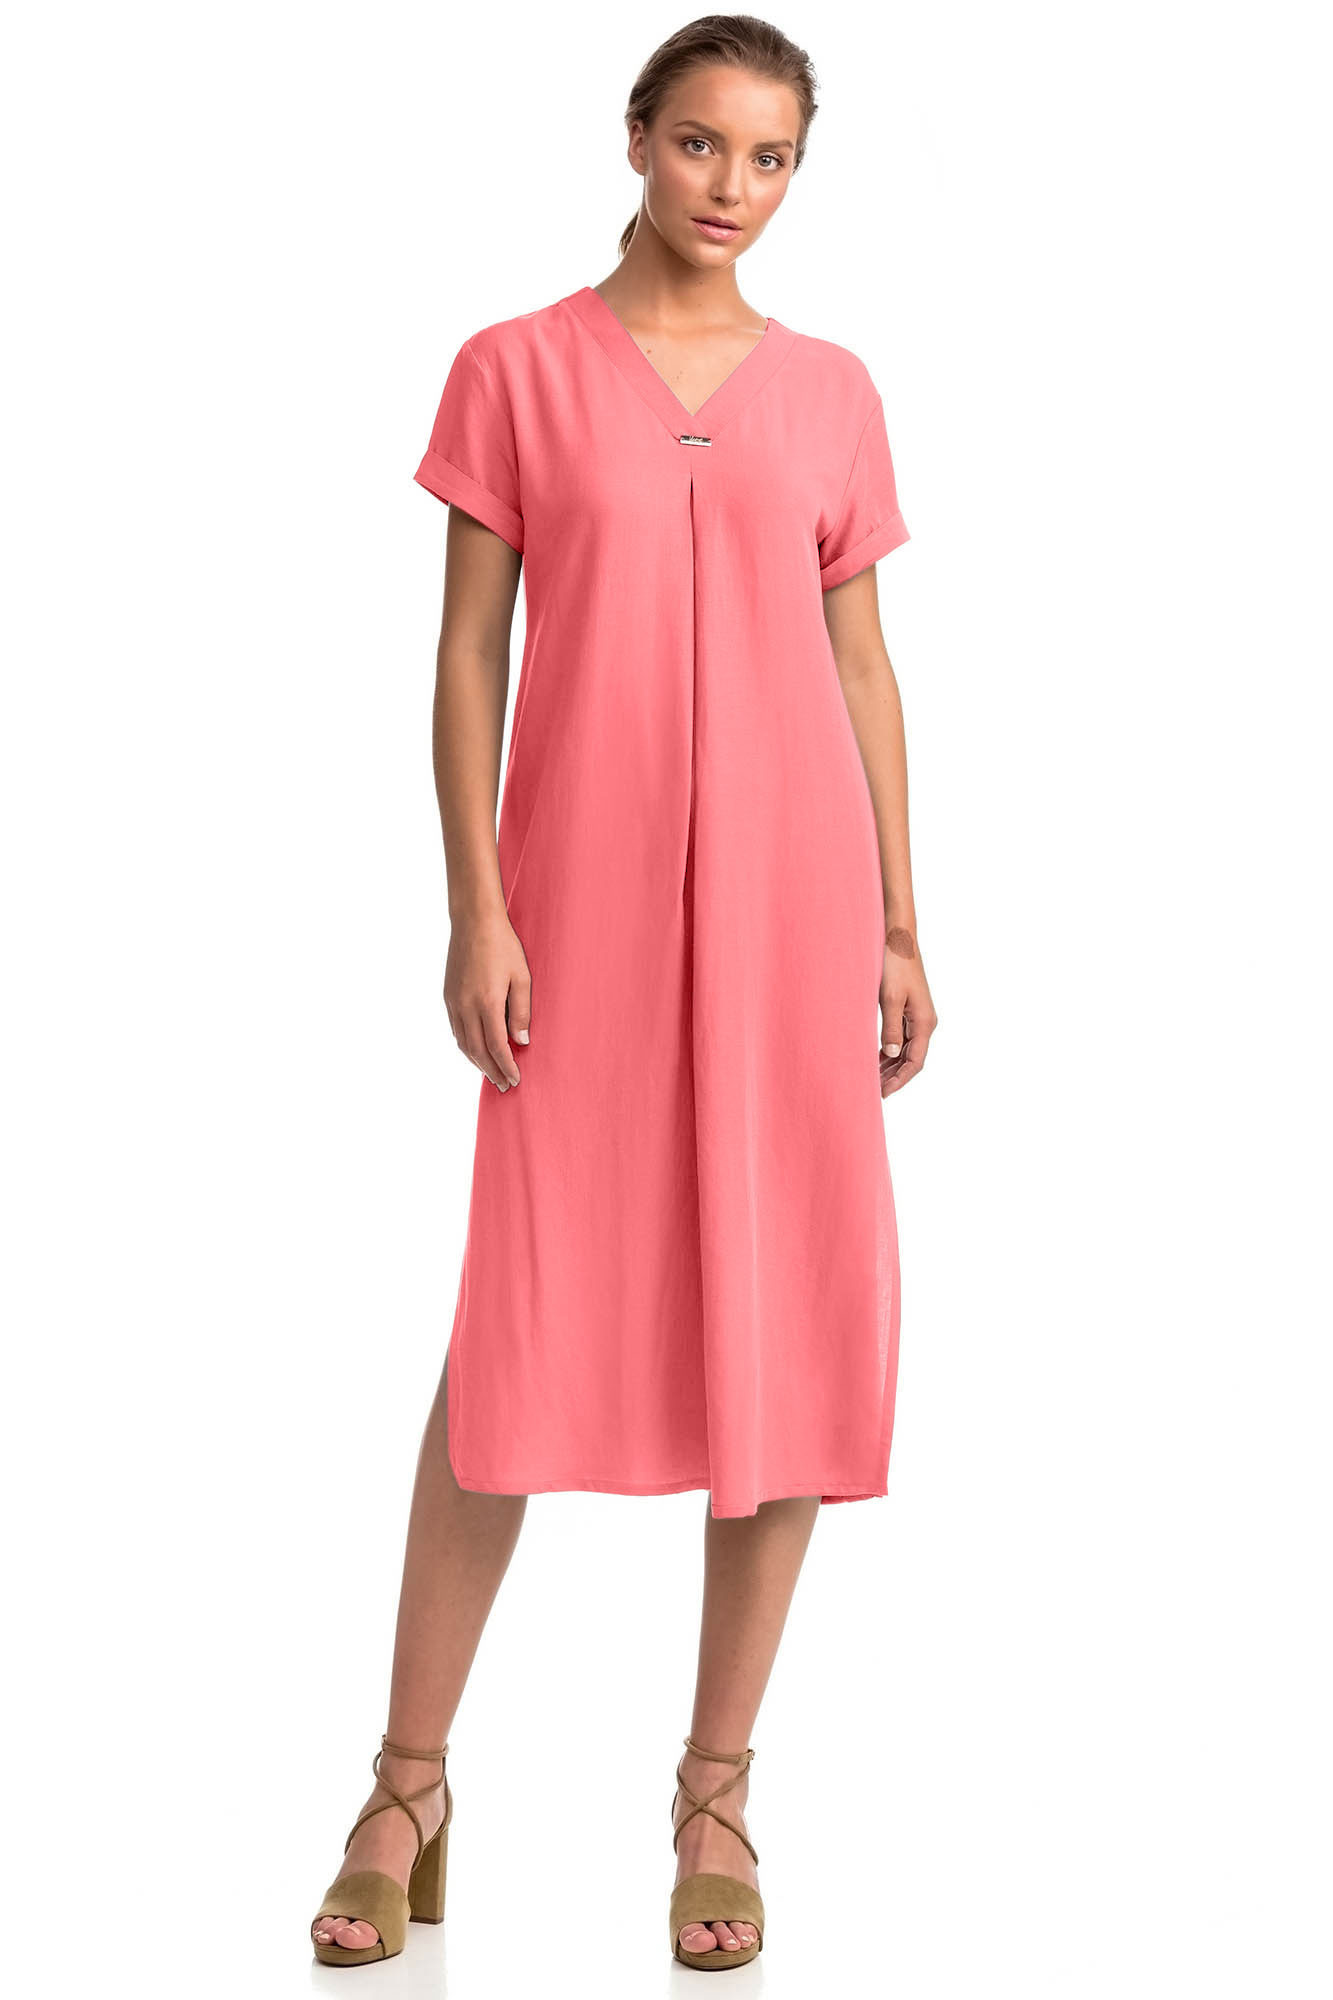 Vamp - Letní dámské šaty 14440 - Vamp coral sugar XXL